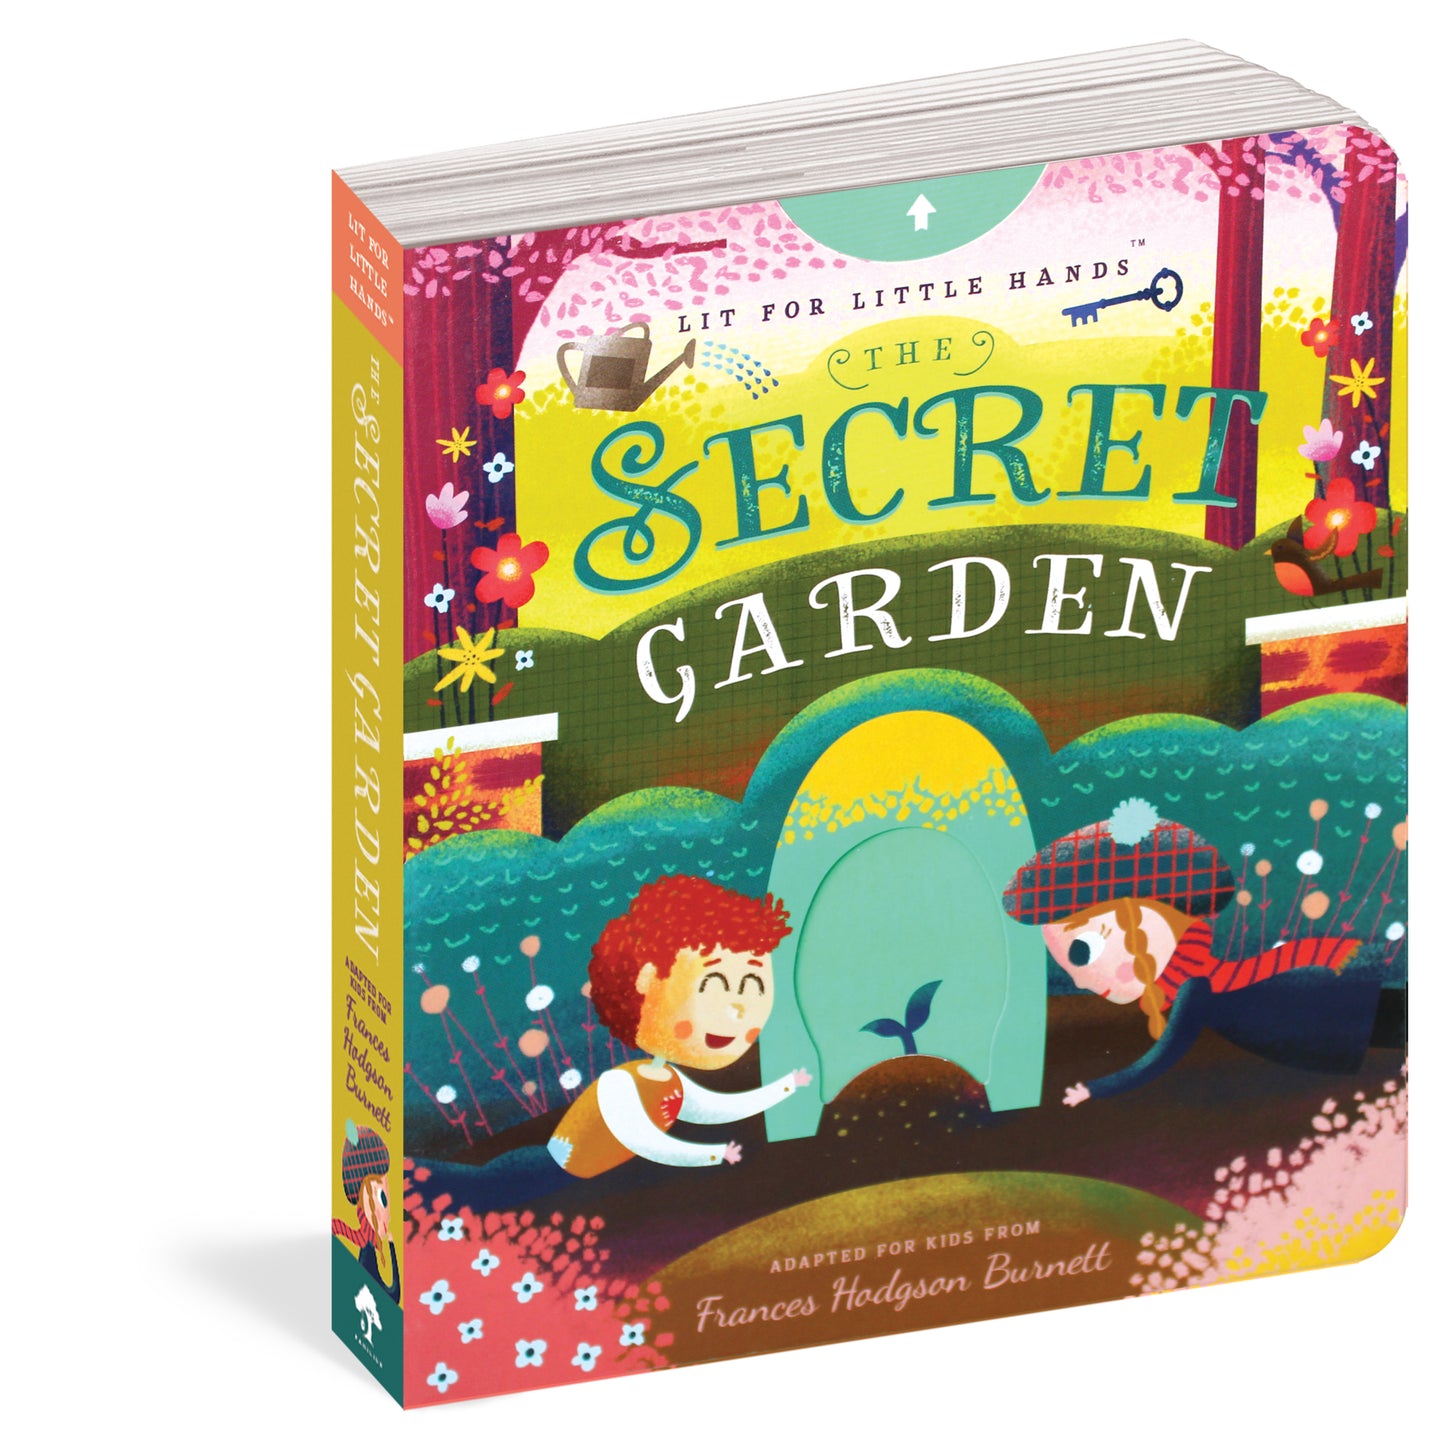 Lit for Little Hands: The Secret Garden